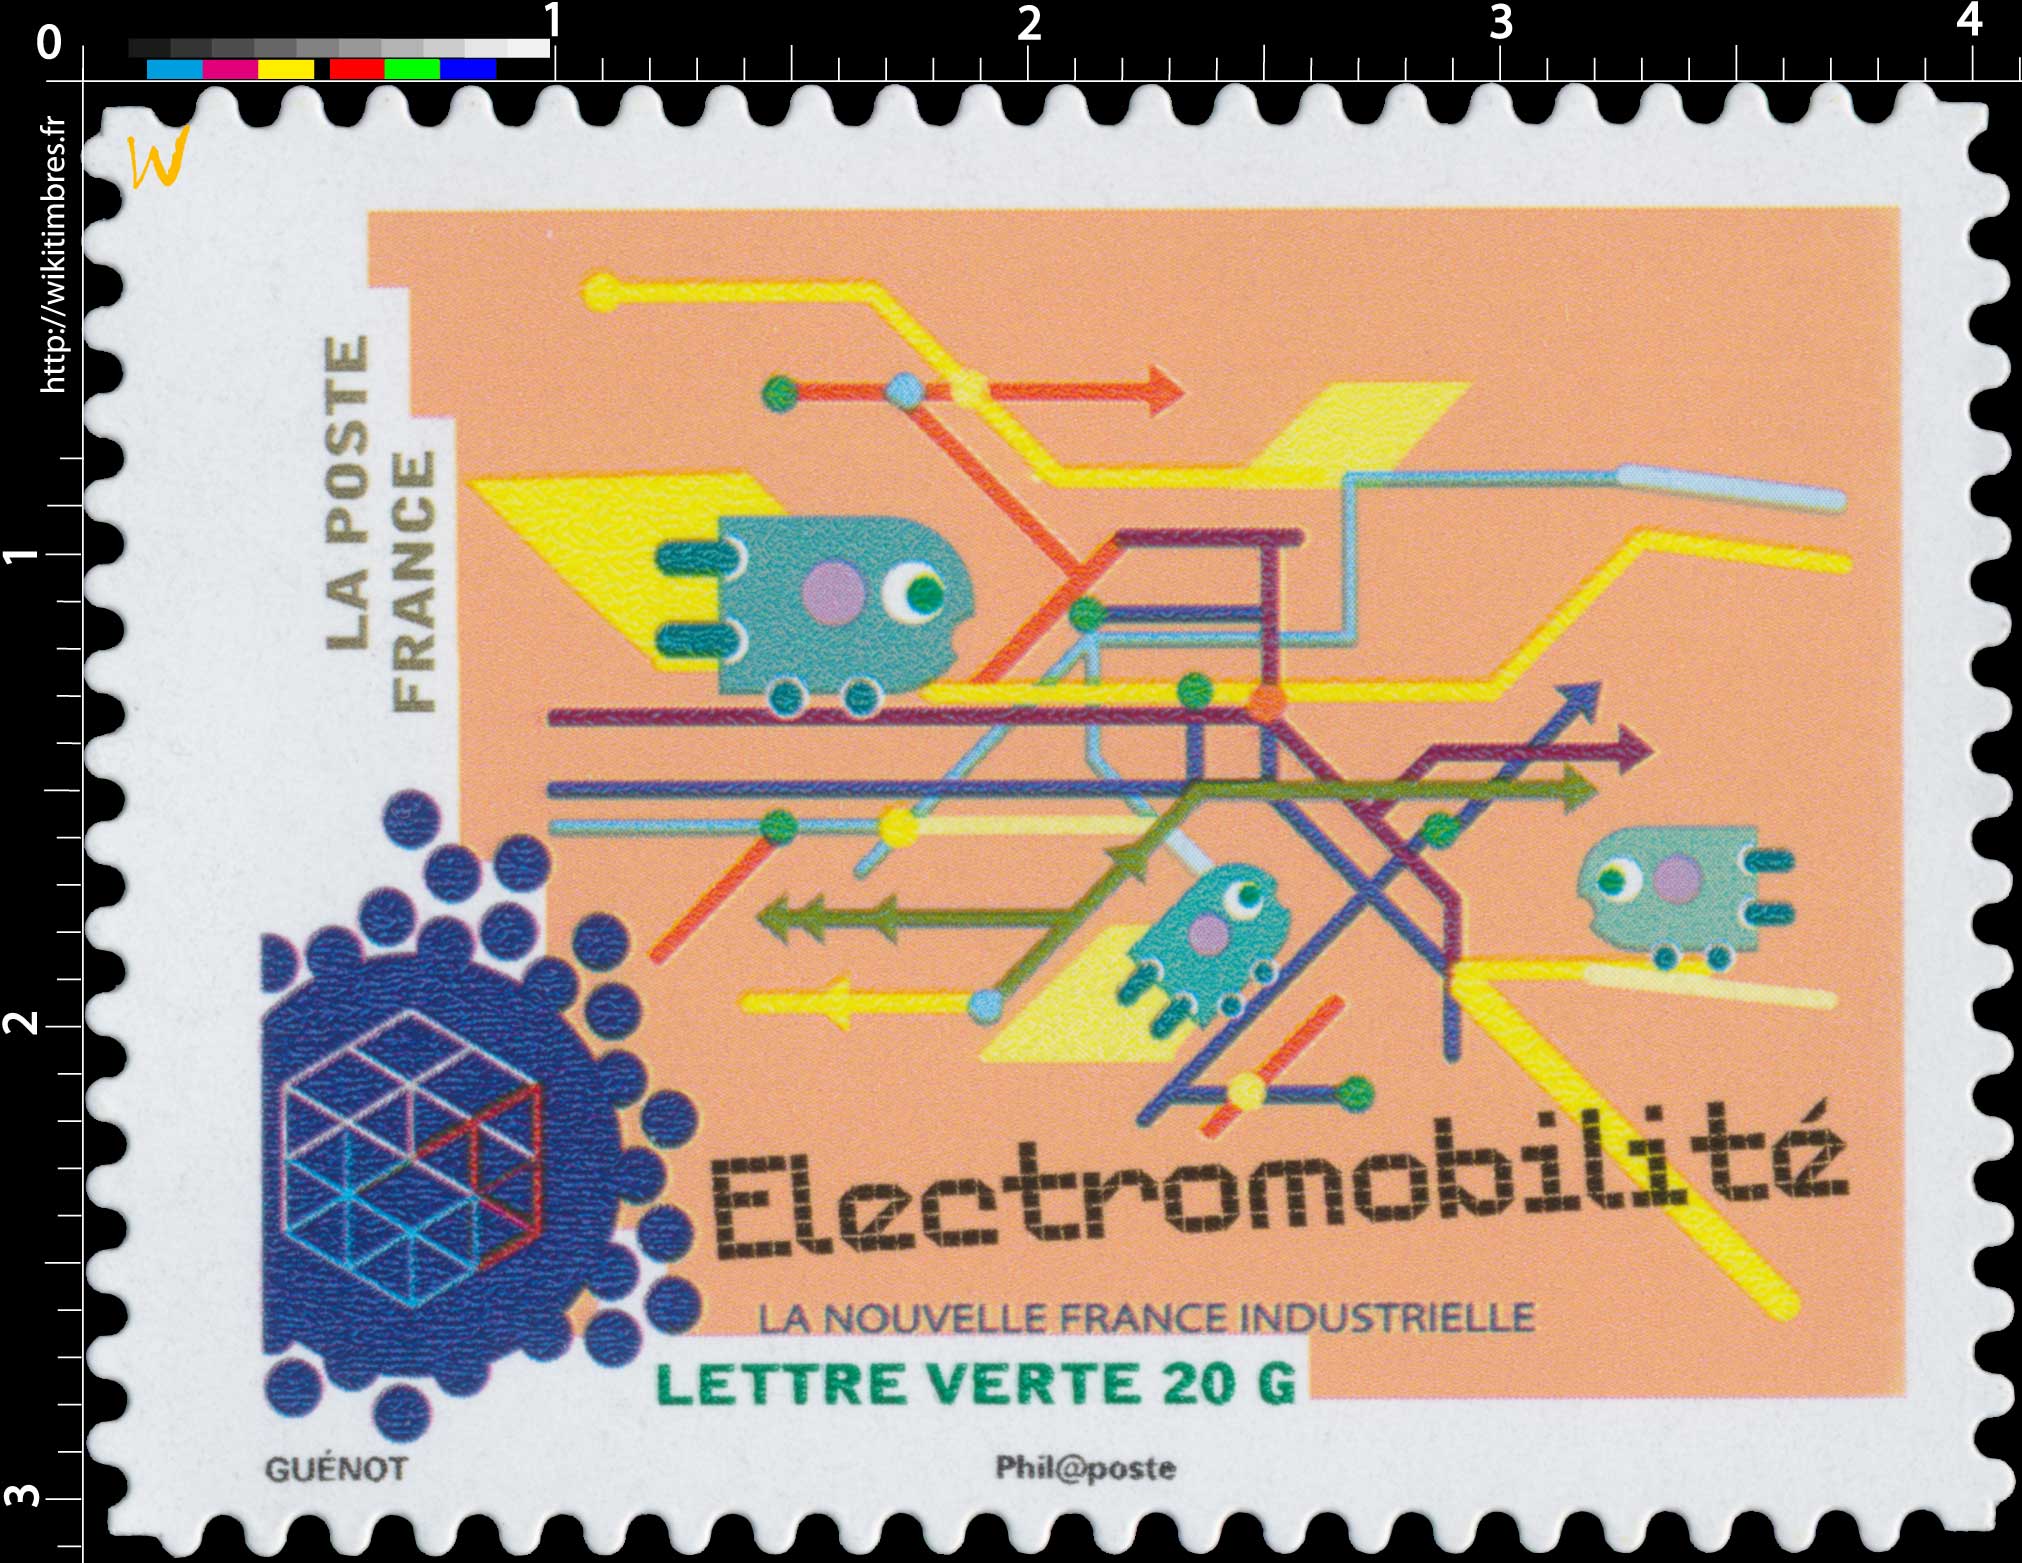 2014 La nouvelle France industrielle - Electromobilité